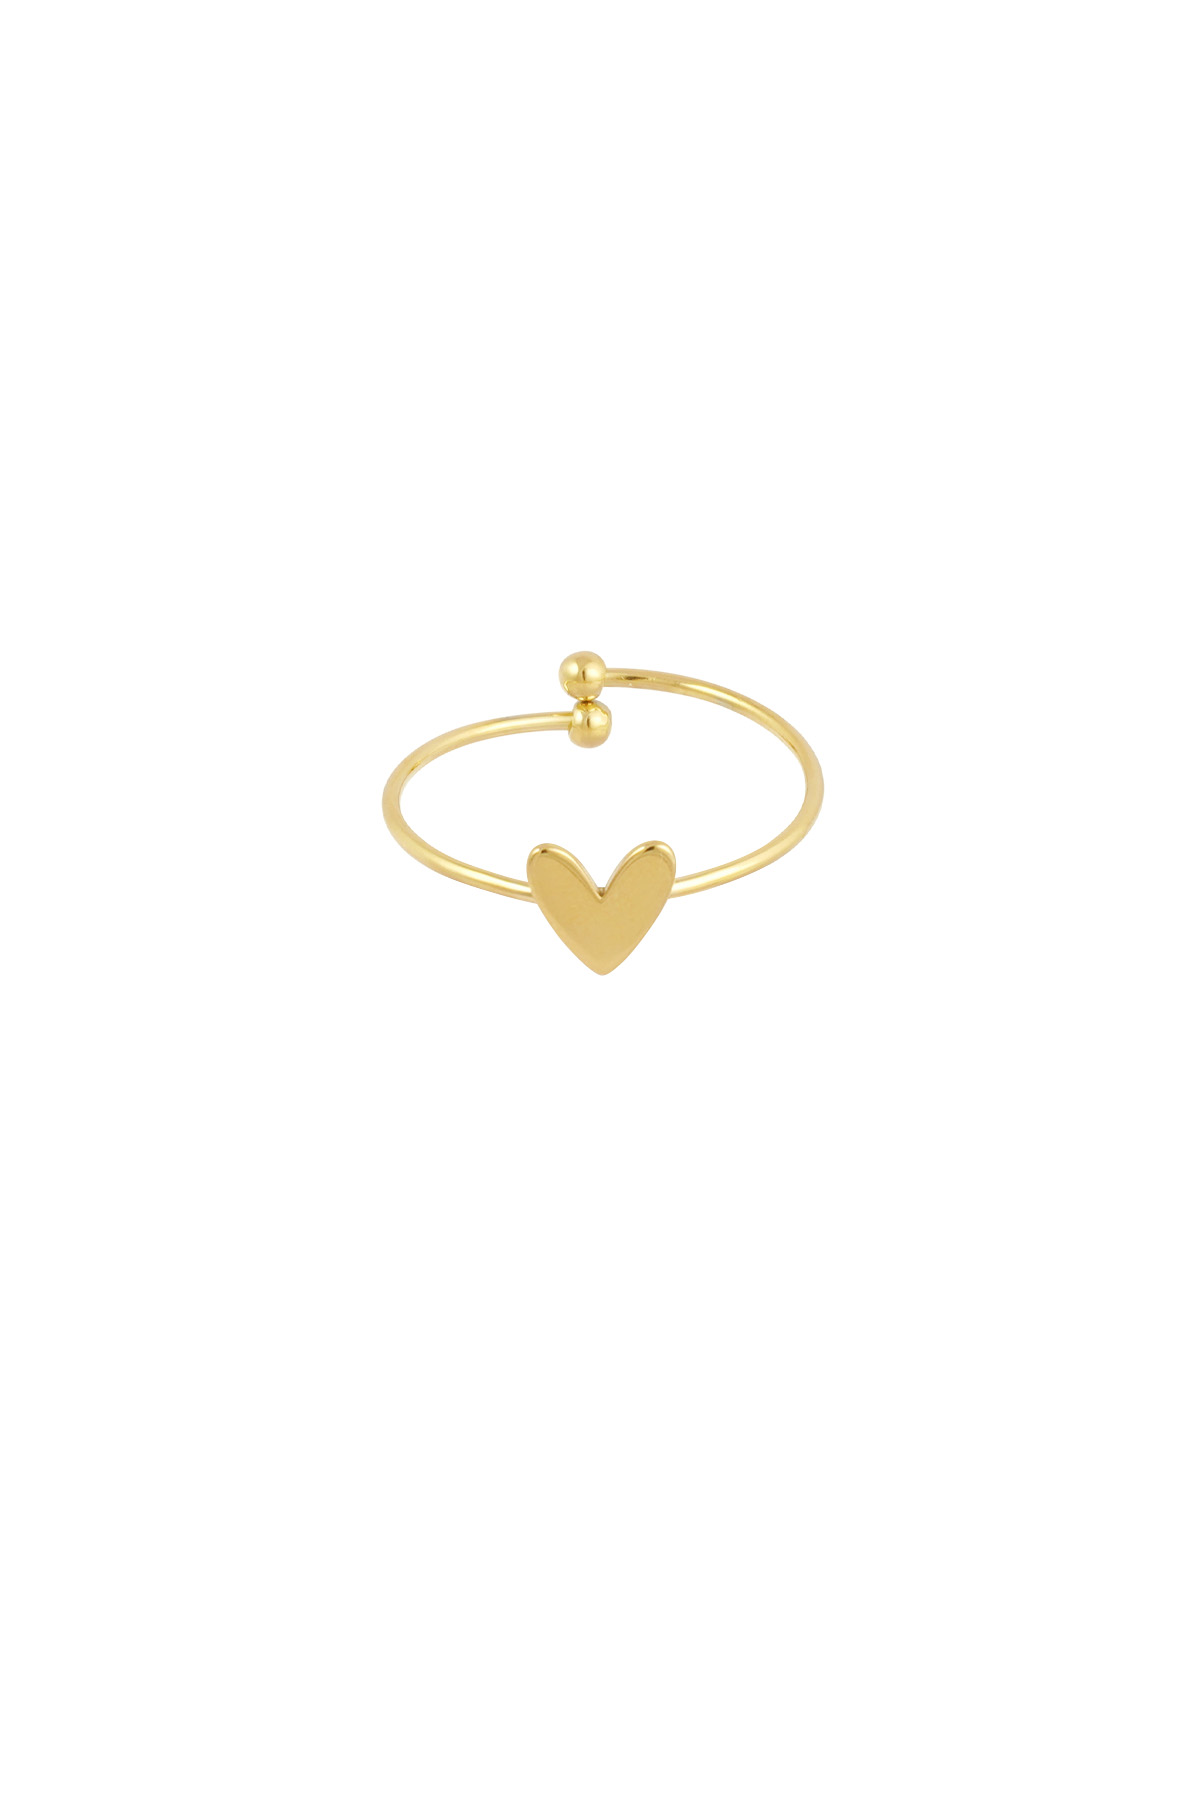 Simpele liefde ring - goud 